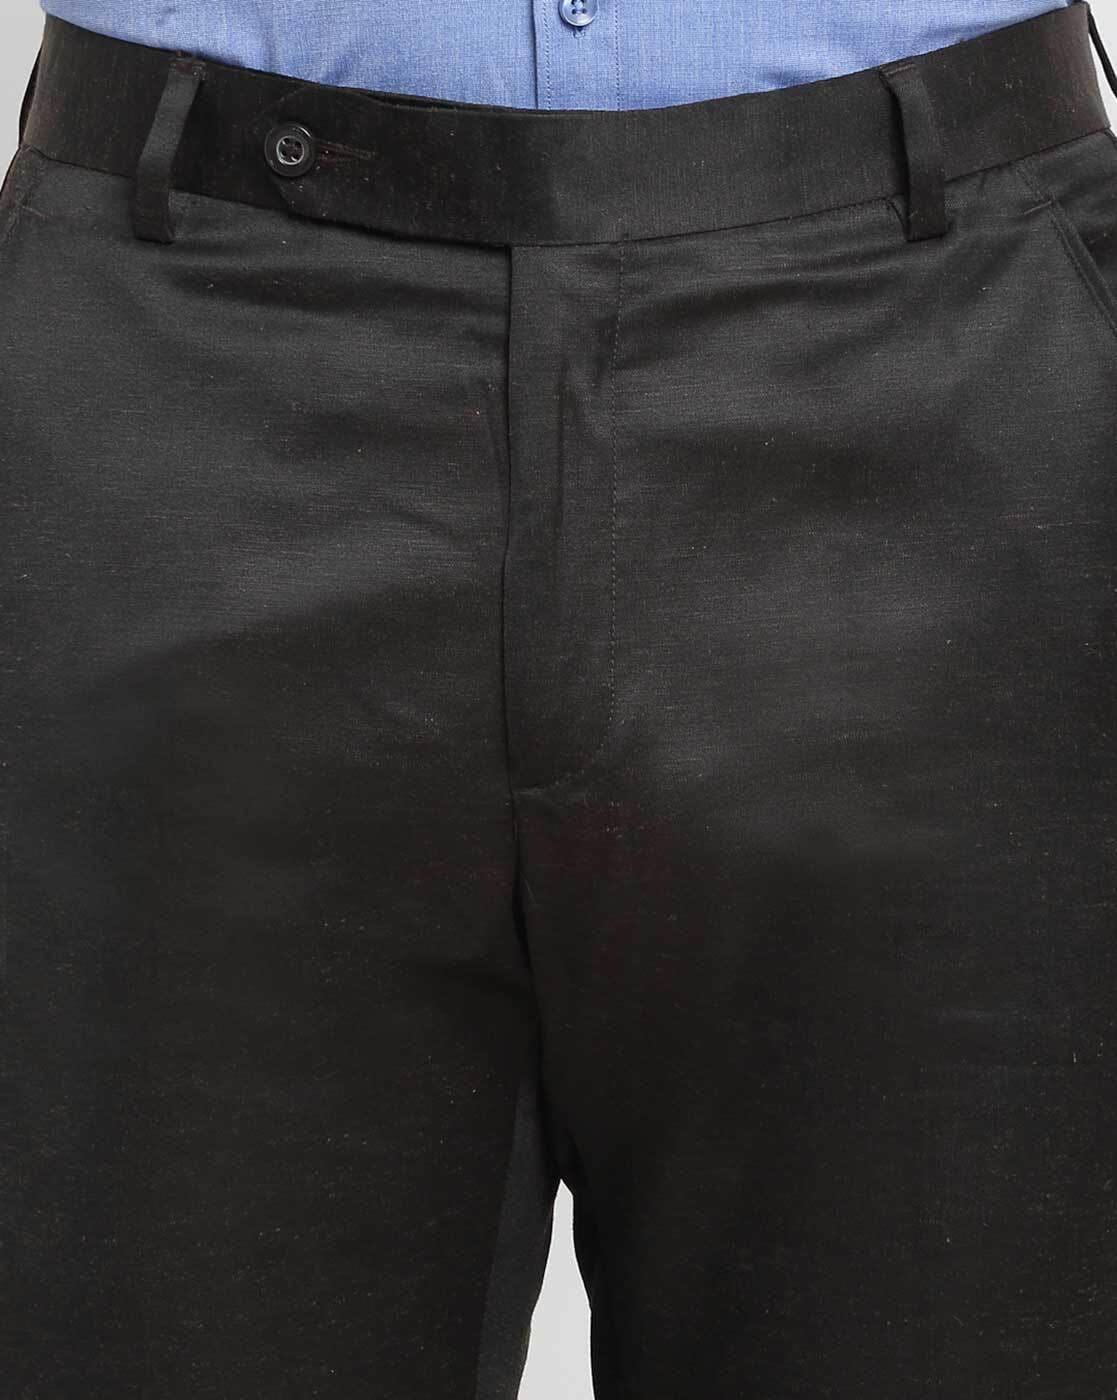 Buy La MODE Men Formal Black Trouser(LA01893_B55032-28) at Amazon.in